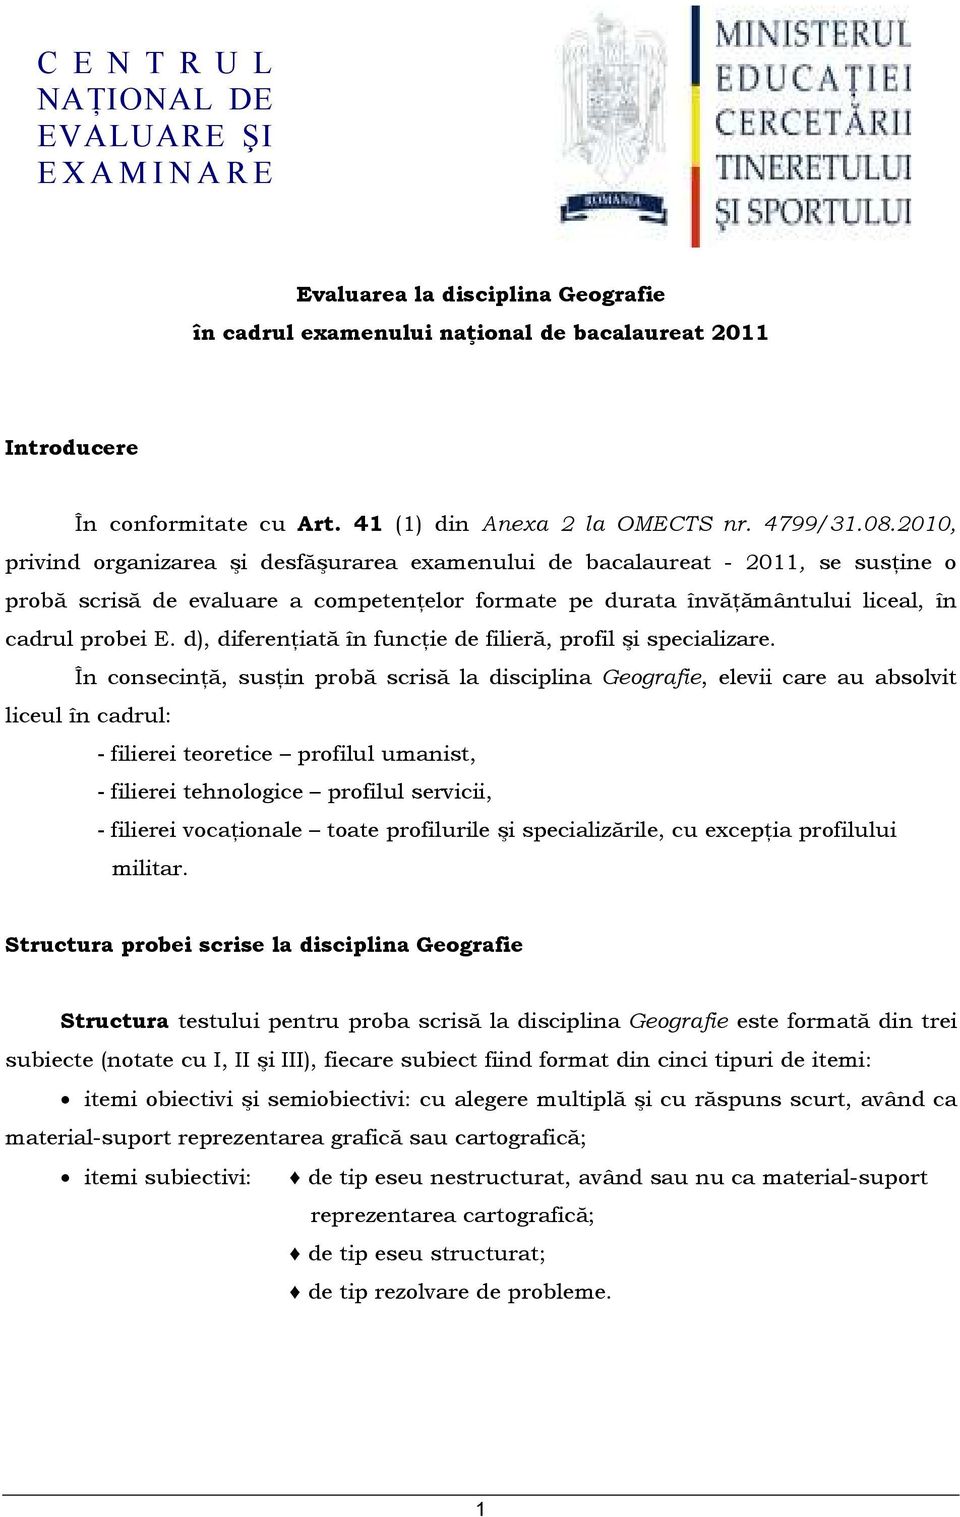 2010, privind organizarea şi desfăşurarea examenului de bacalaureat - 2011, se susńine o probă scrisă de evaluare a competenńelor formate pe durata învăńământului liceal, în cadrul probei E.